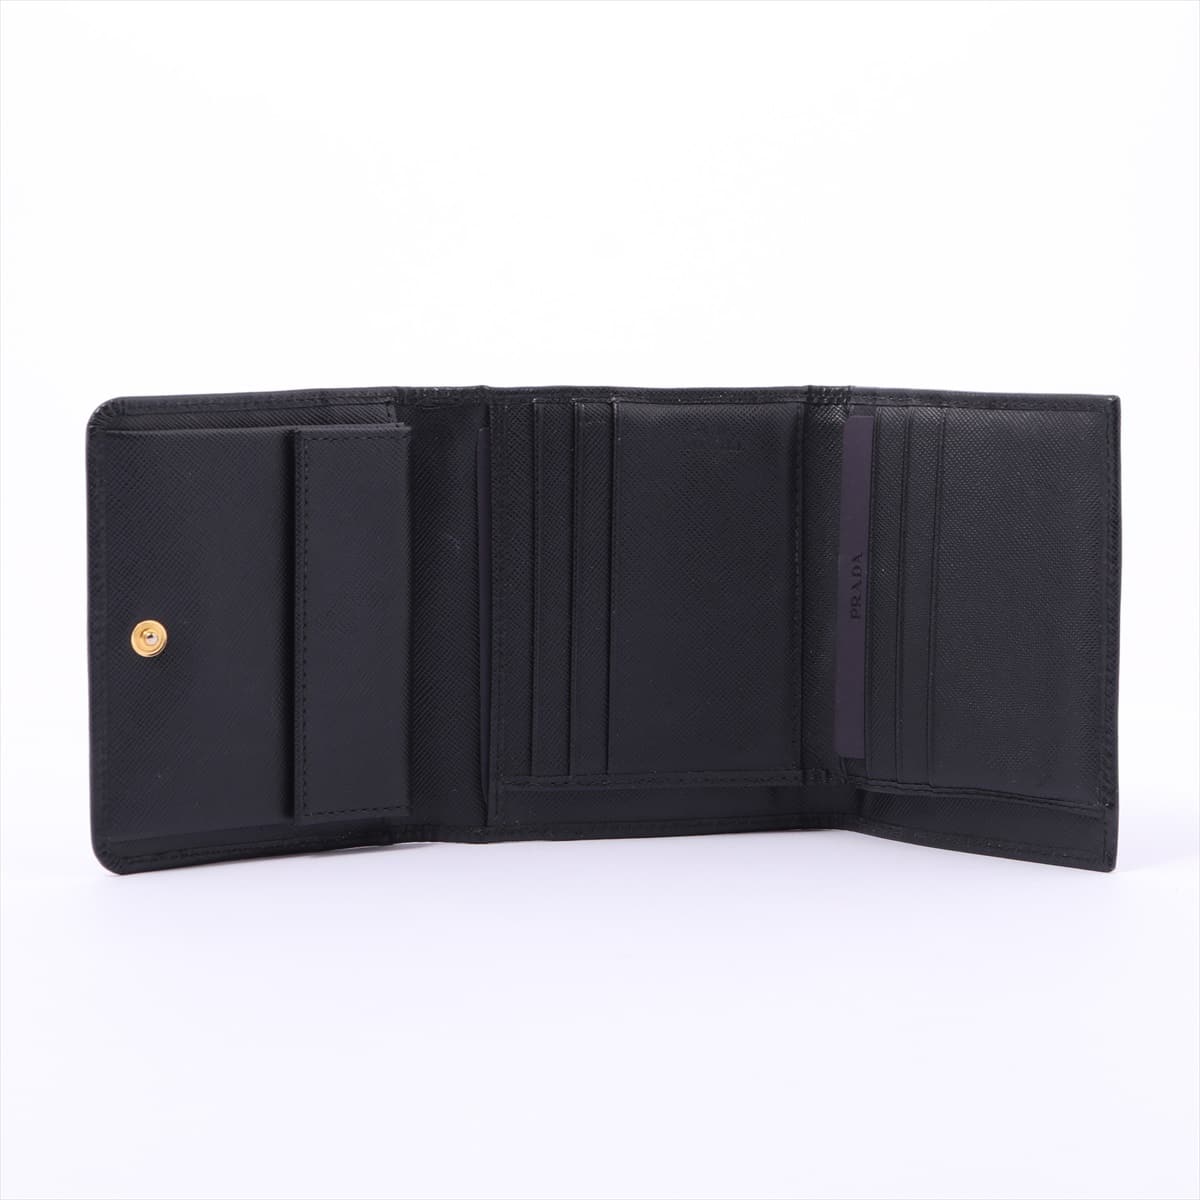 プラダ サフィアーノメタル 1M0176 レザー 財布 ブラック